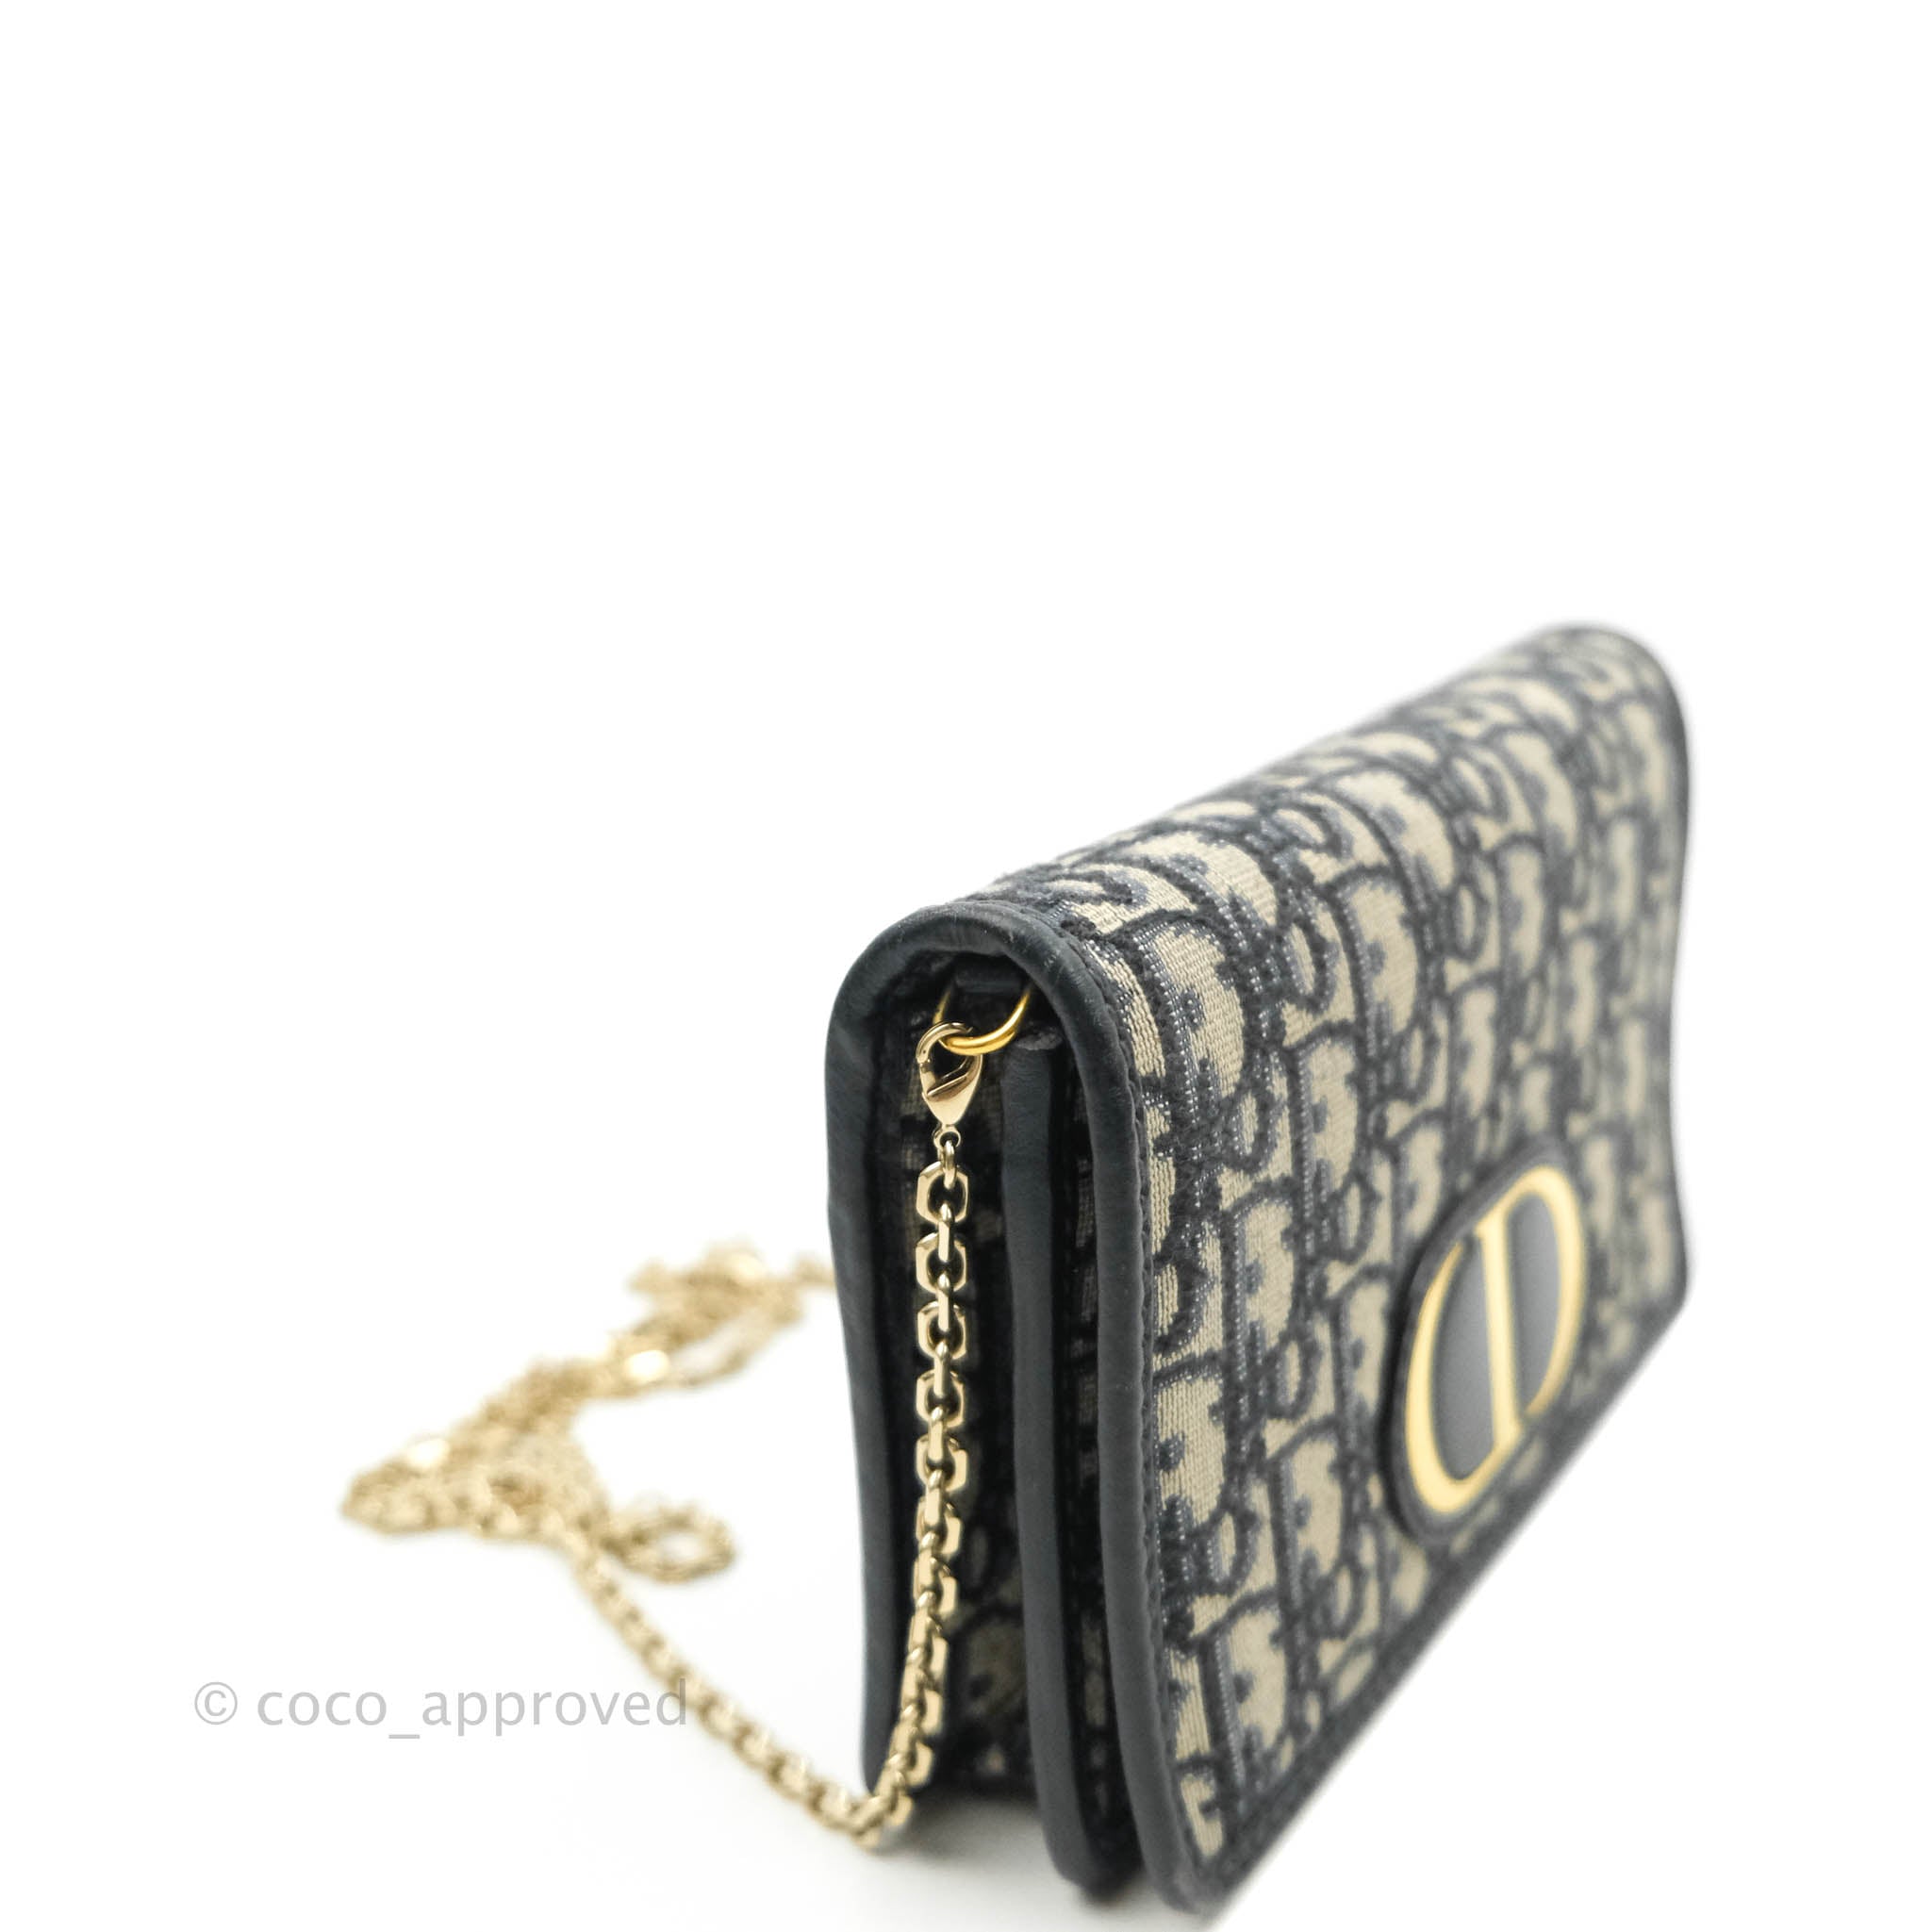 Dior 30 Montaign Nano pouch with Chain Blue Oblique jacquard